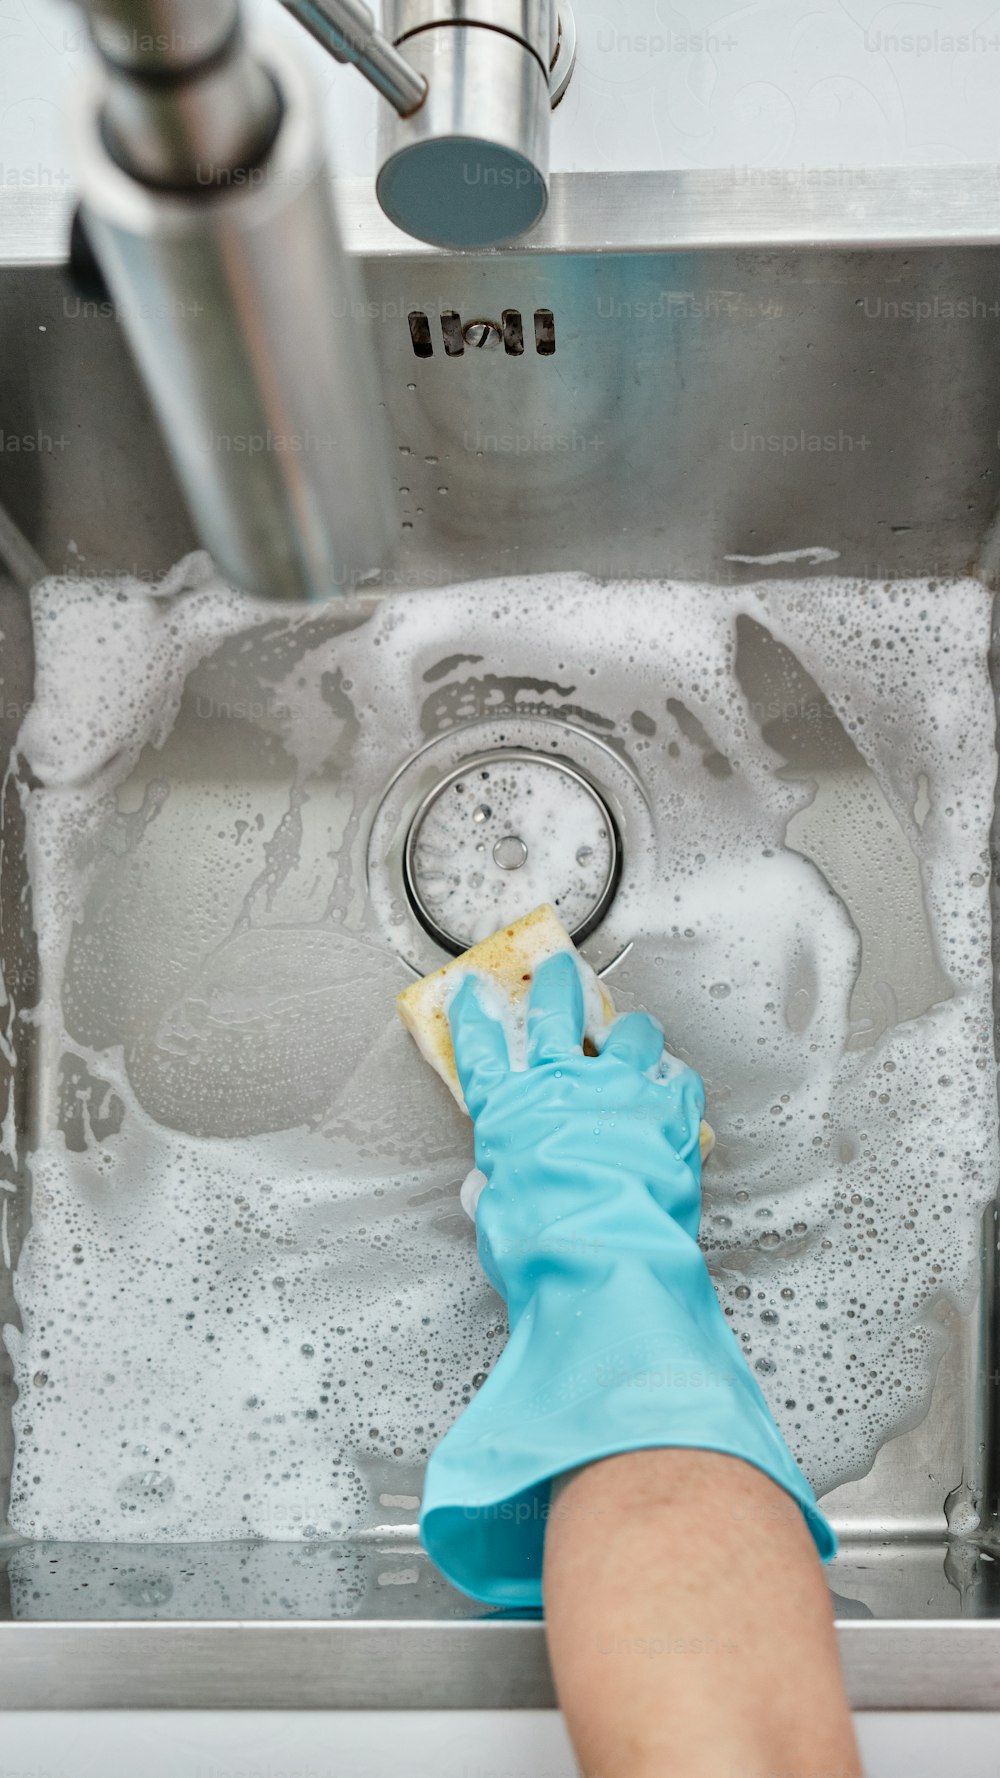 eine Person, die ein Waschbecken mit einem blauen Handschuh reinigt